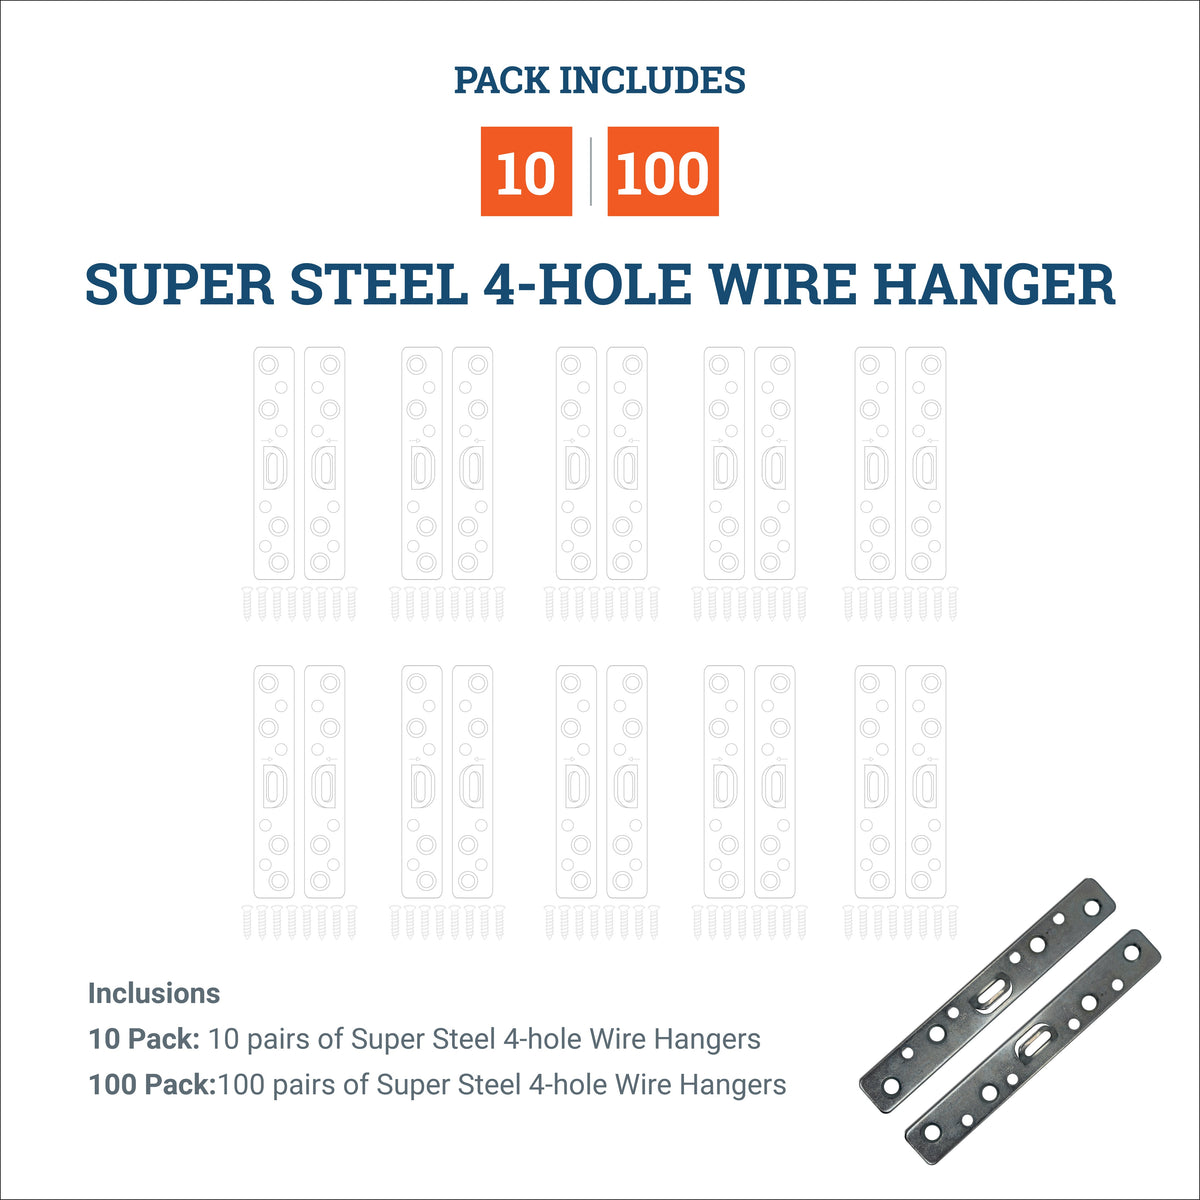 Super Steel 4-Hole Wire Hanger